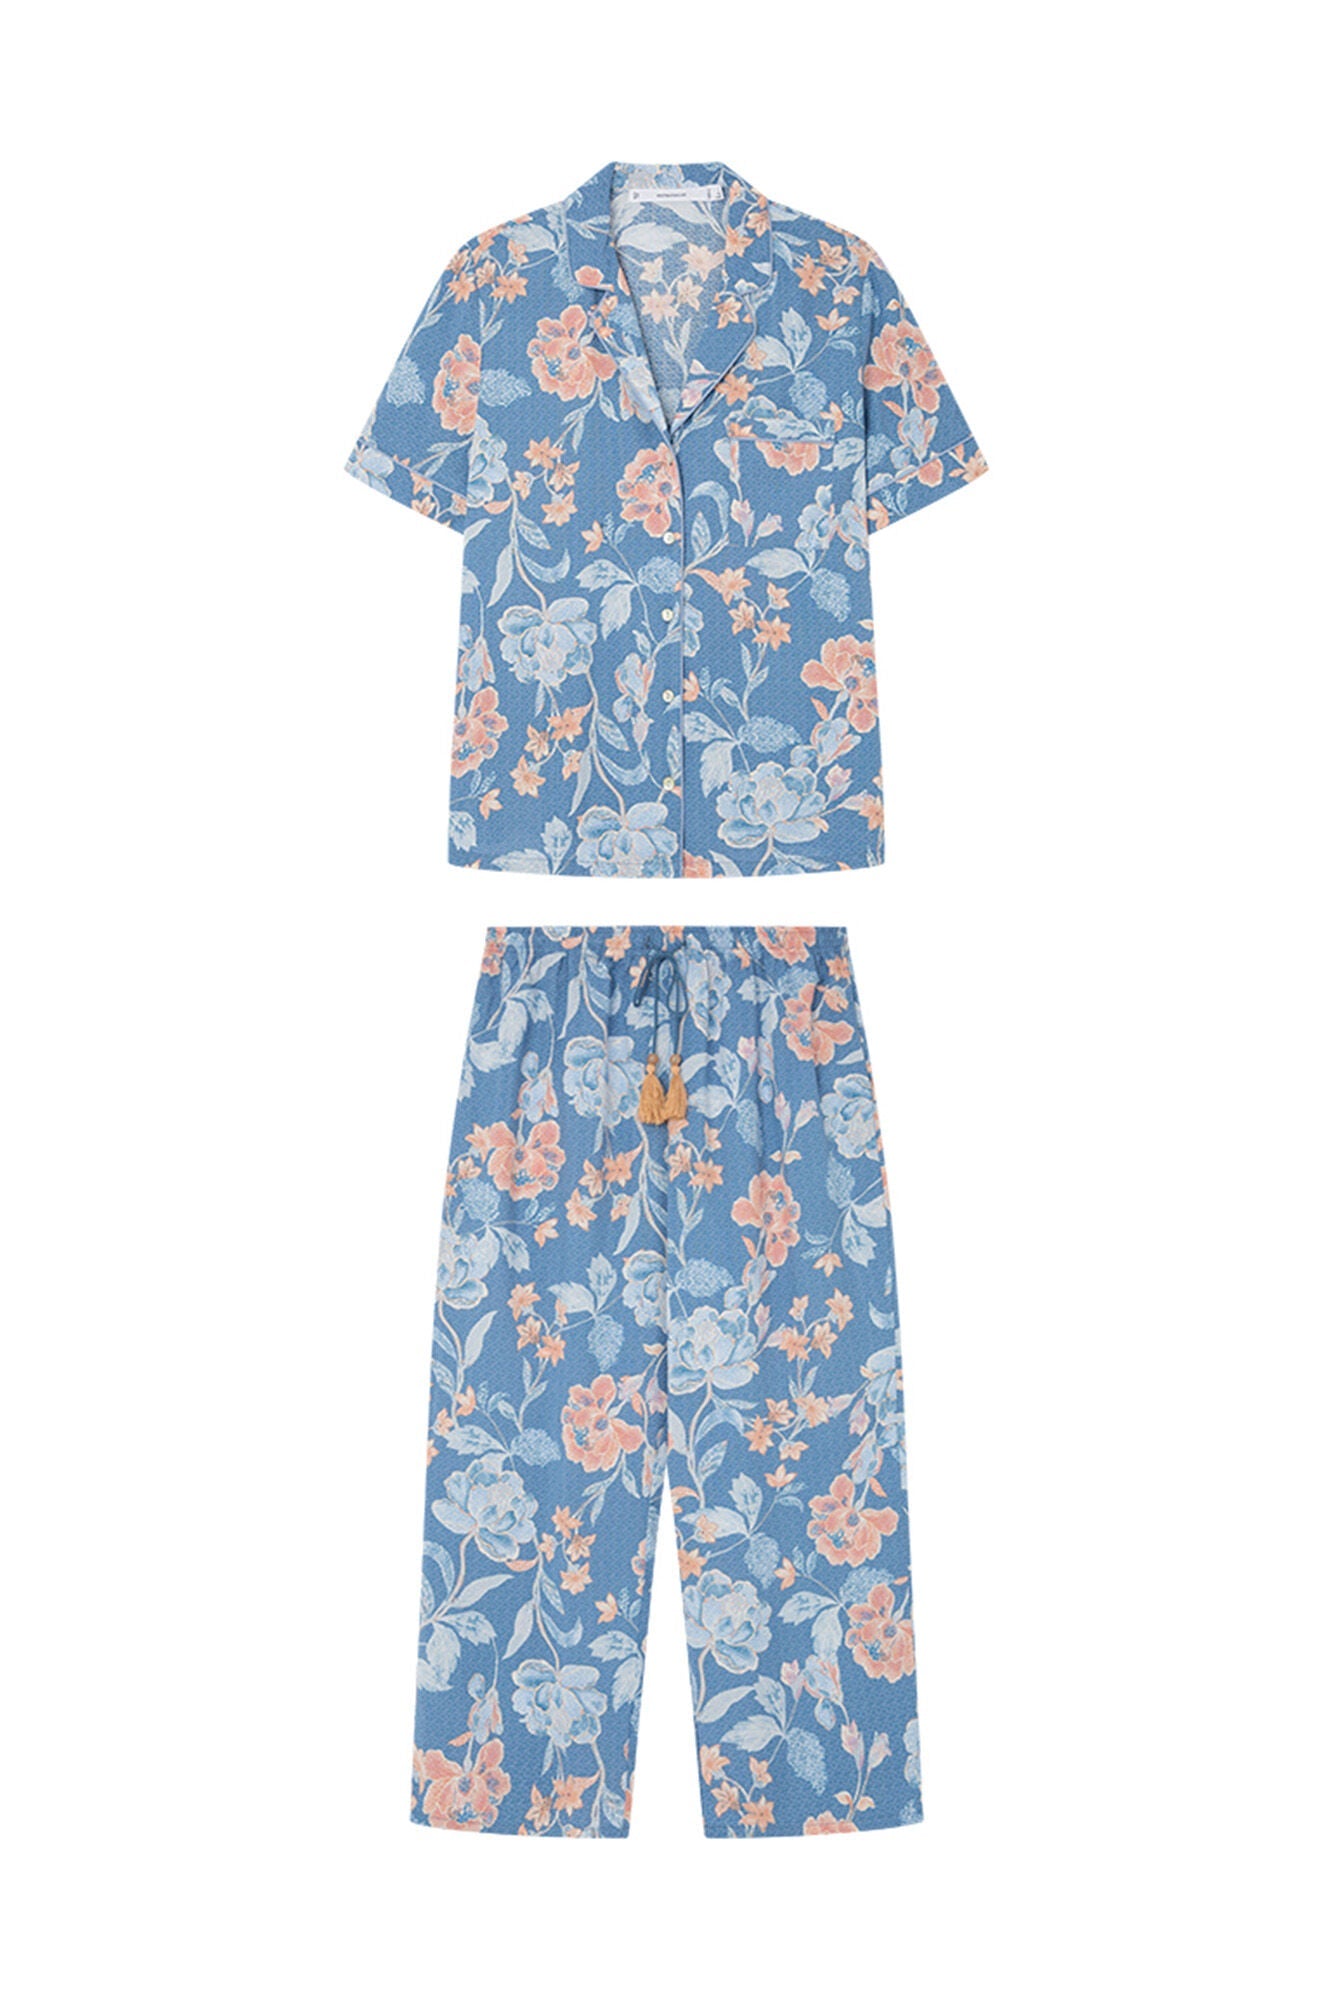 Capri shirt pajamas with blue flowers